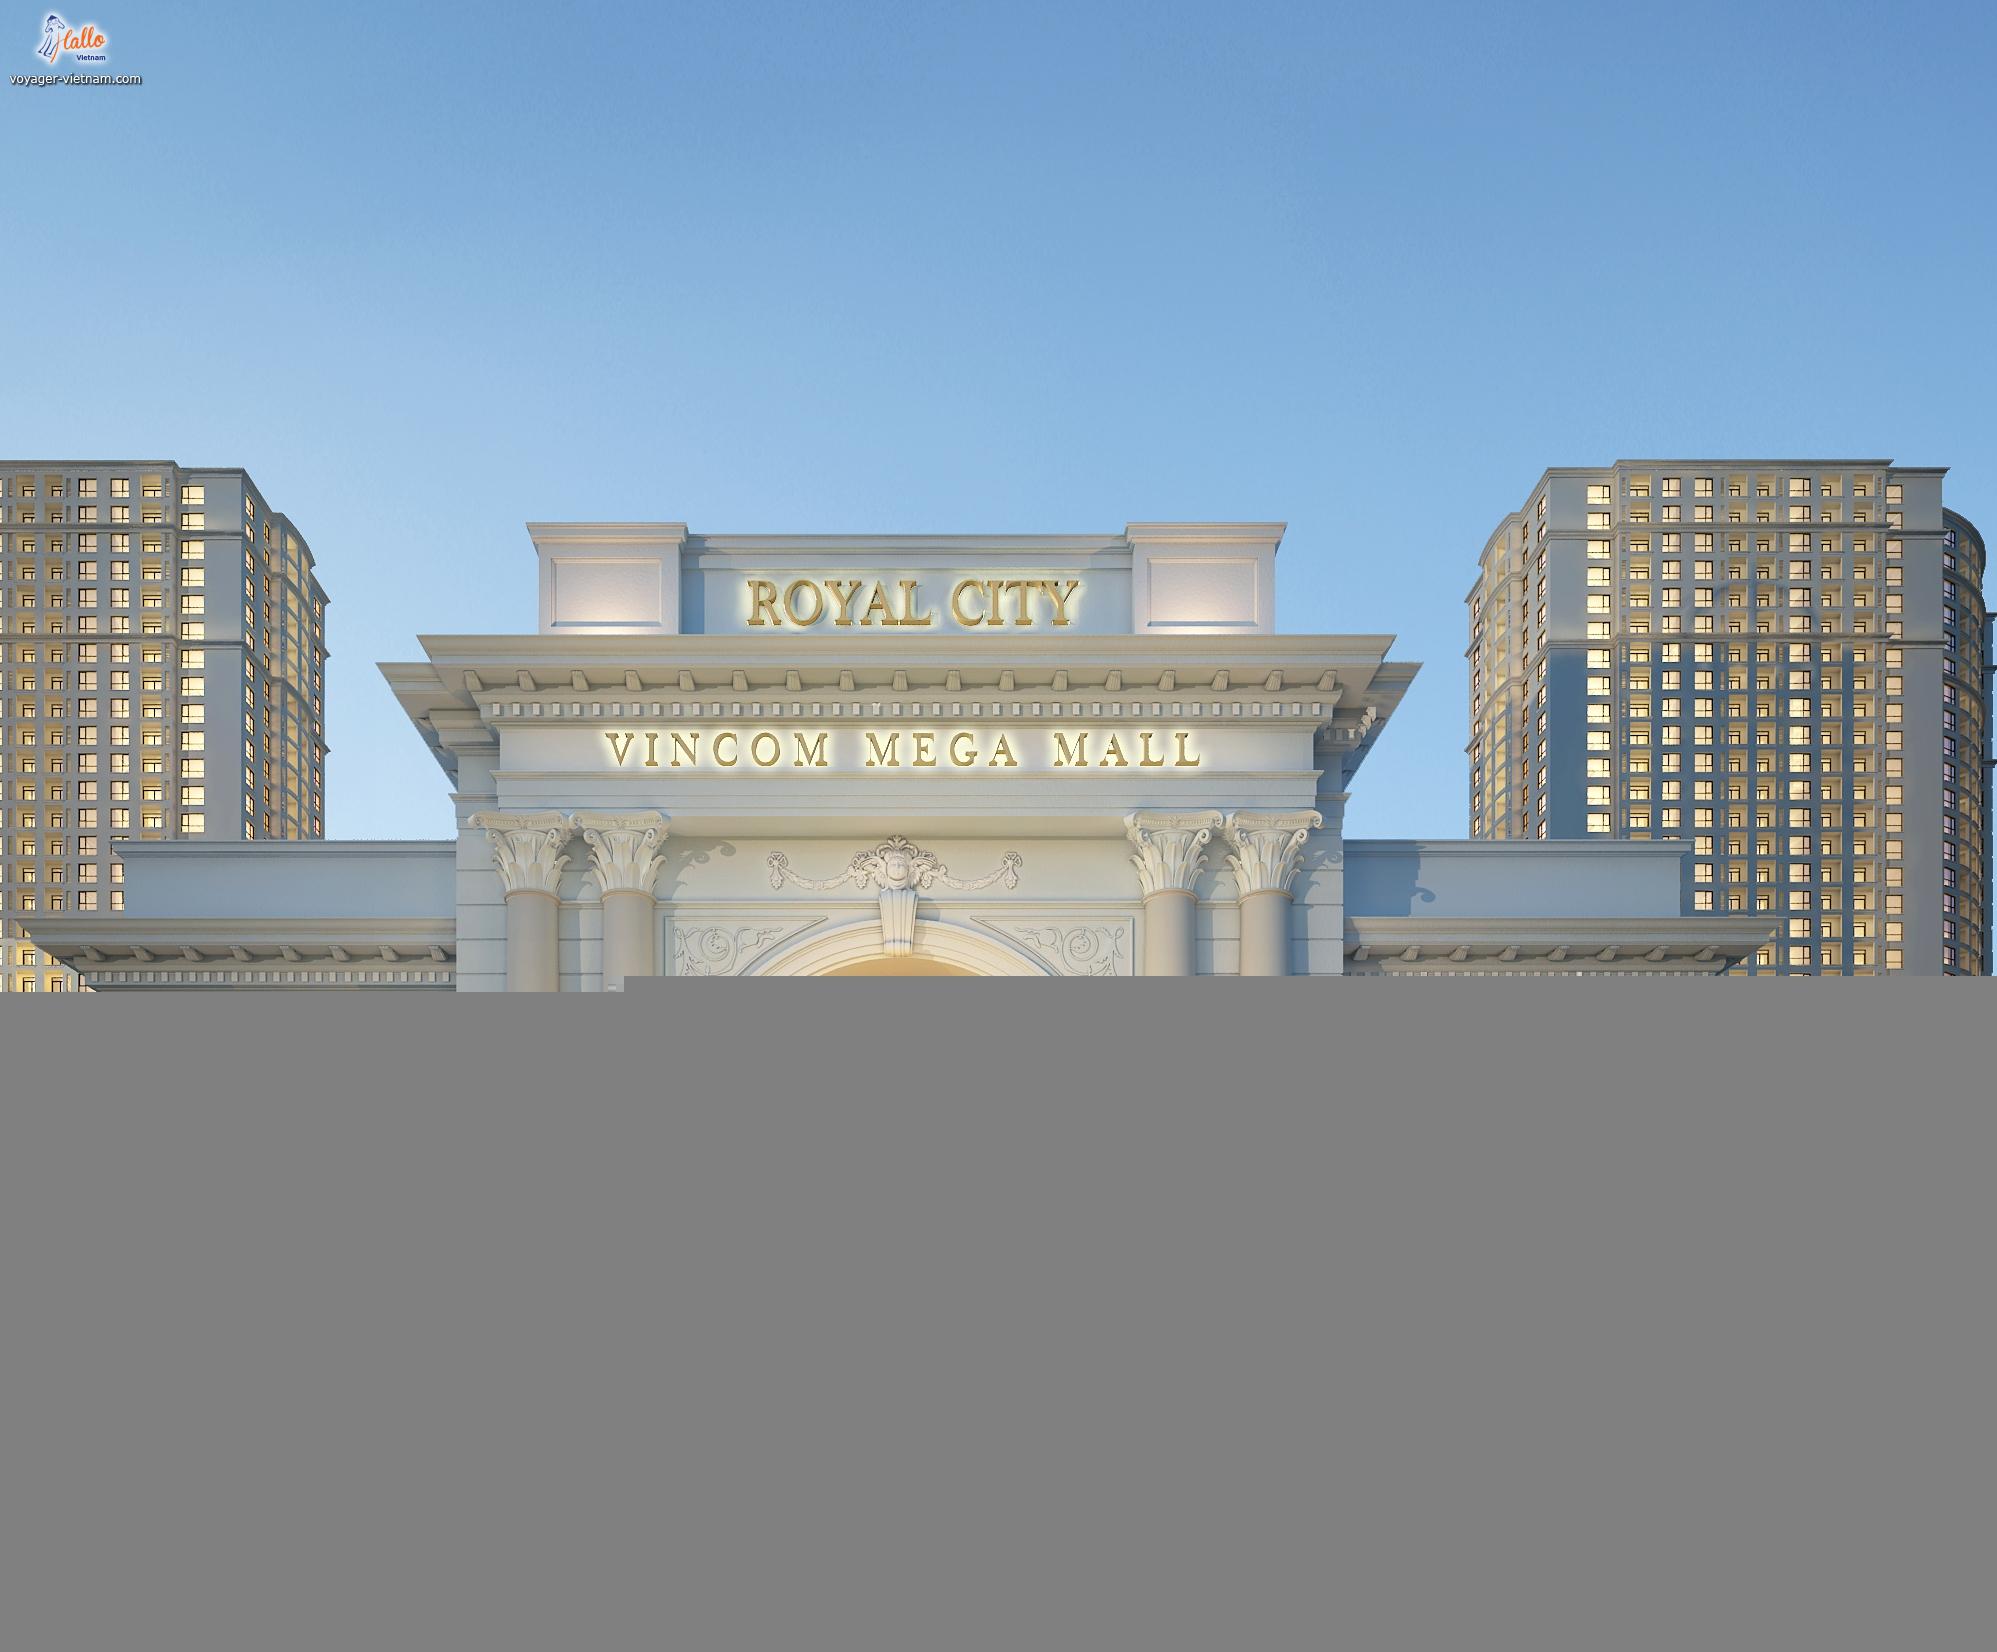 Vincom Mega Mall Royal City prochainement ouvert à Hanoi